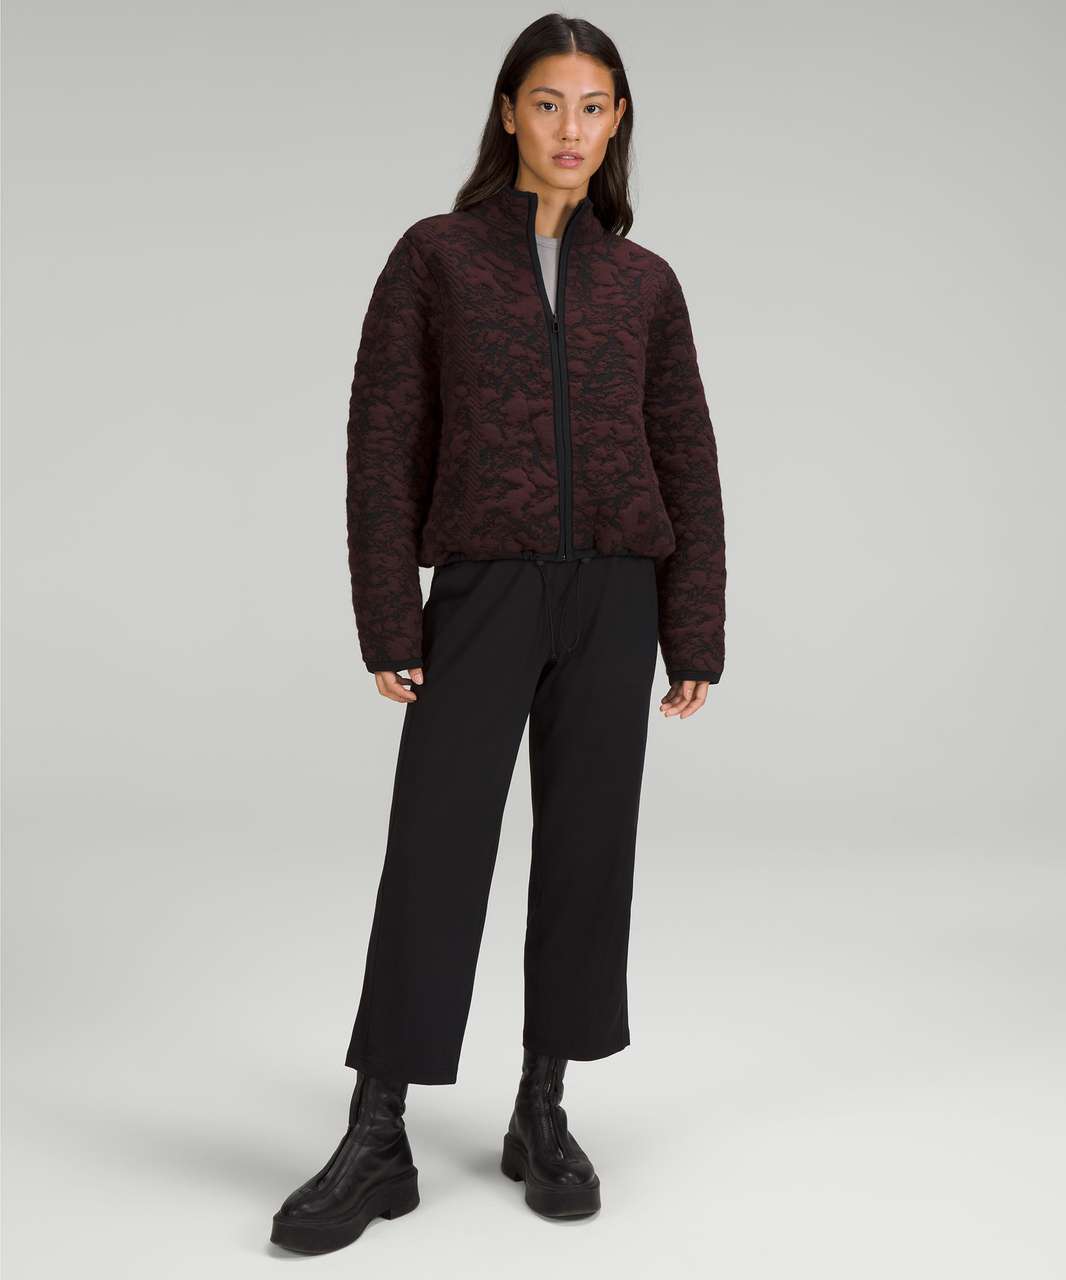 Lululemon Jacquard Multi-Texture Sweater Jacket - Red Merlot / Black